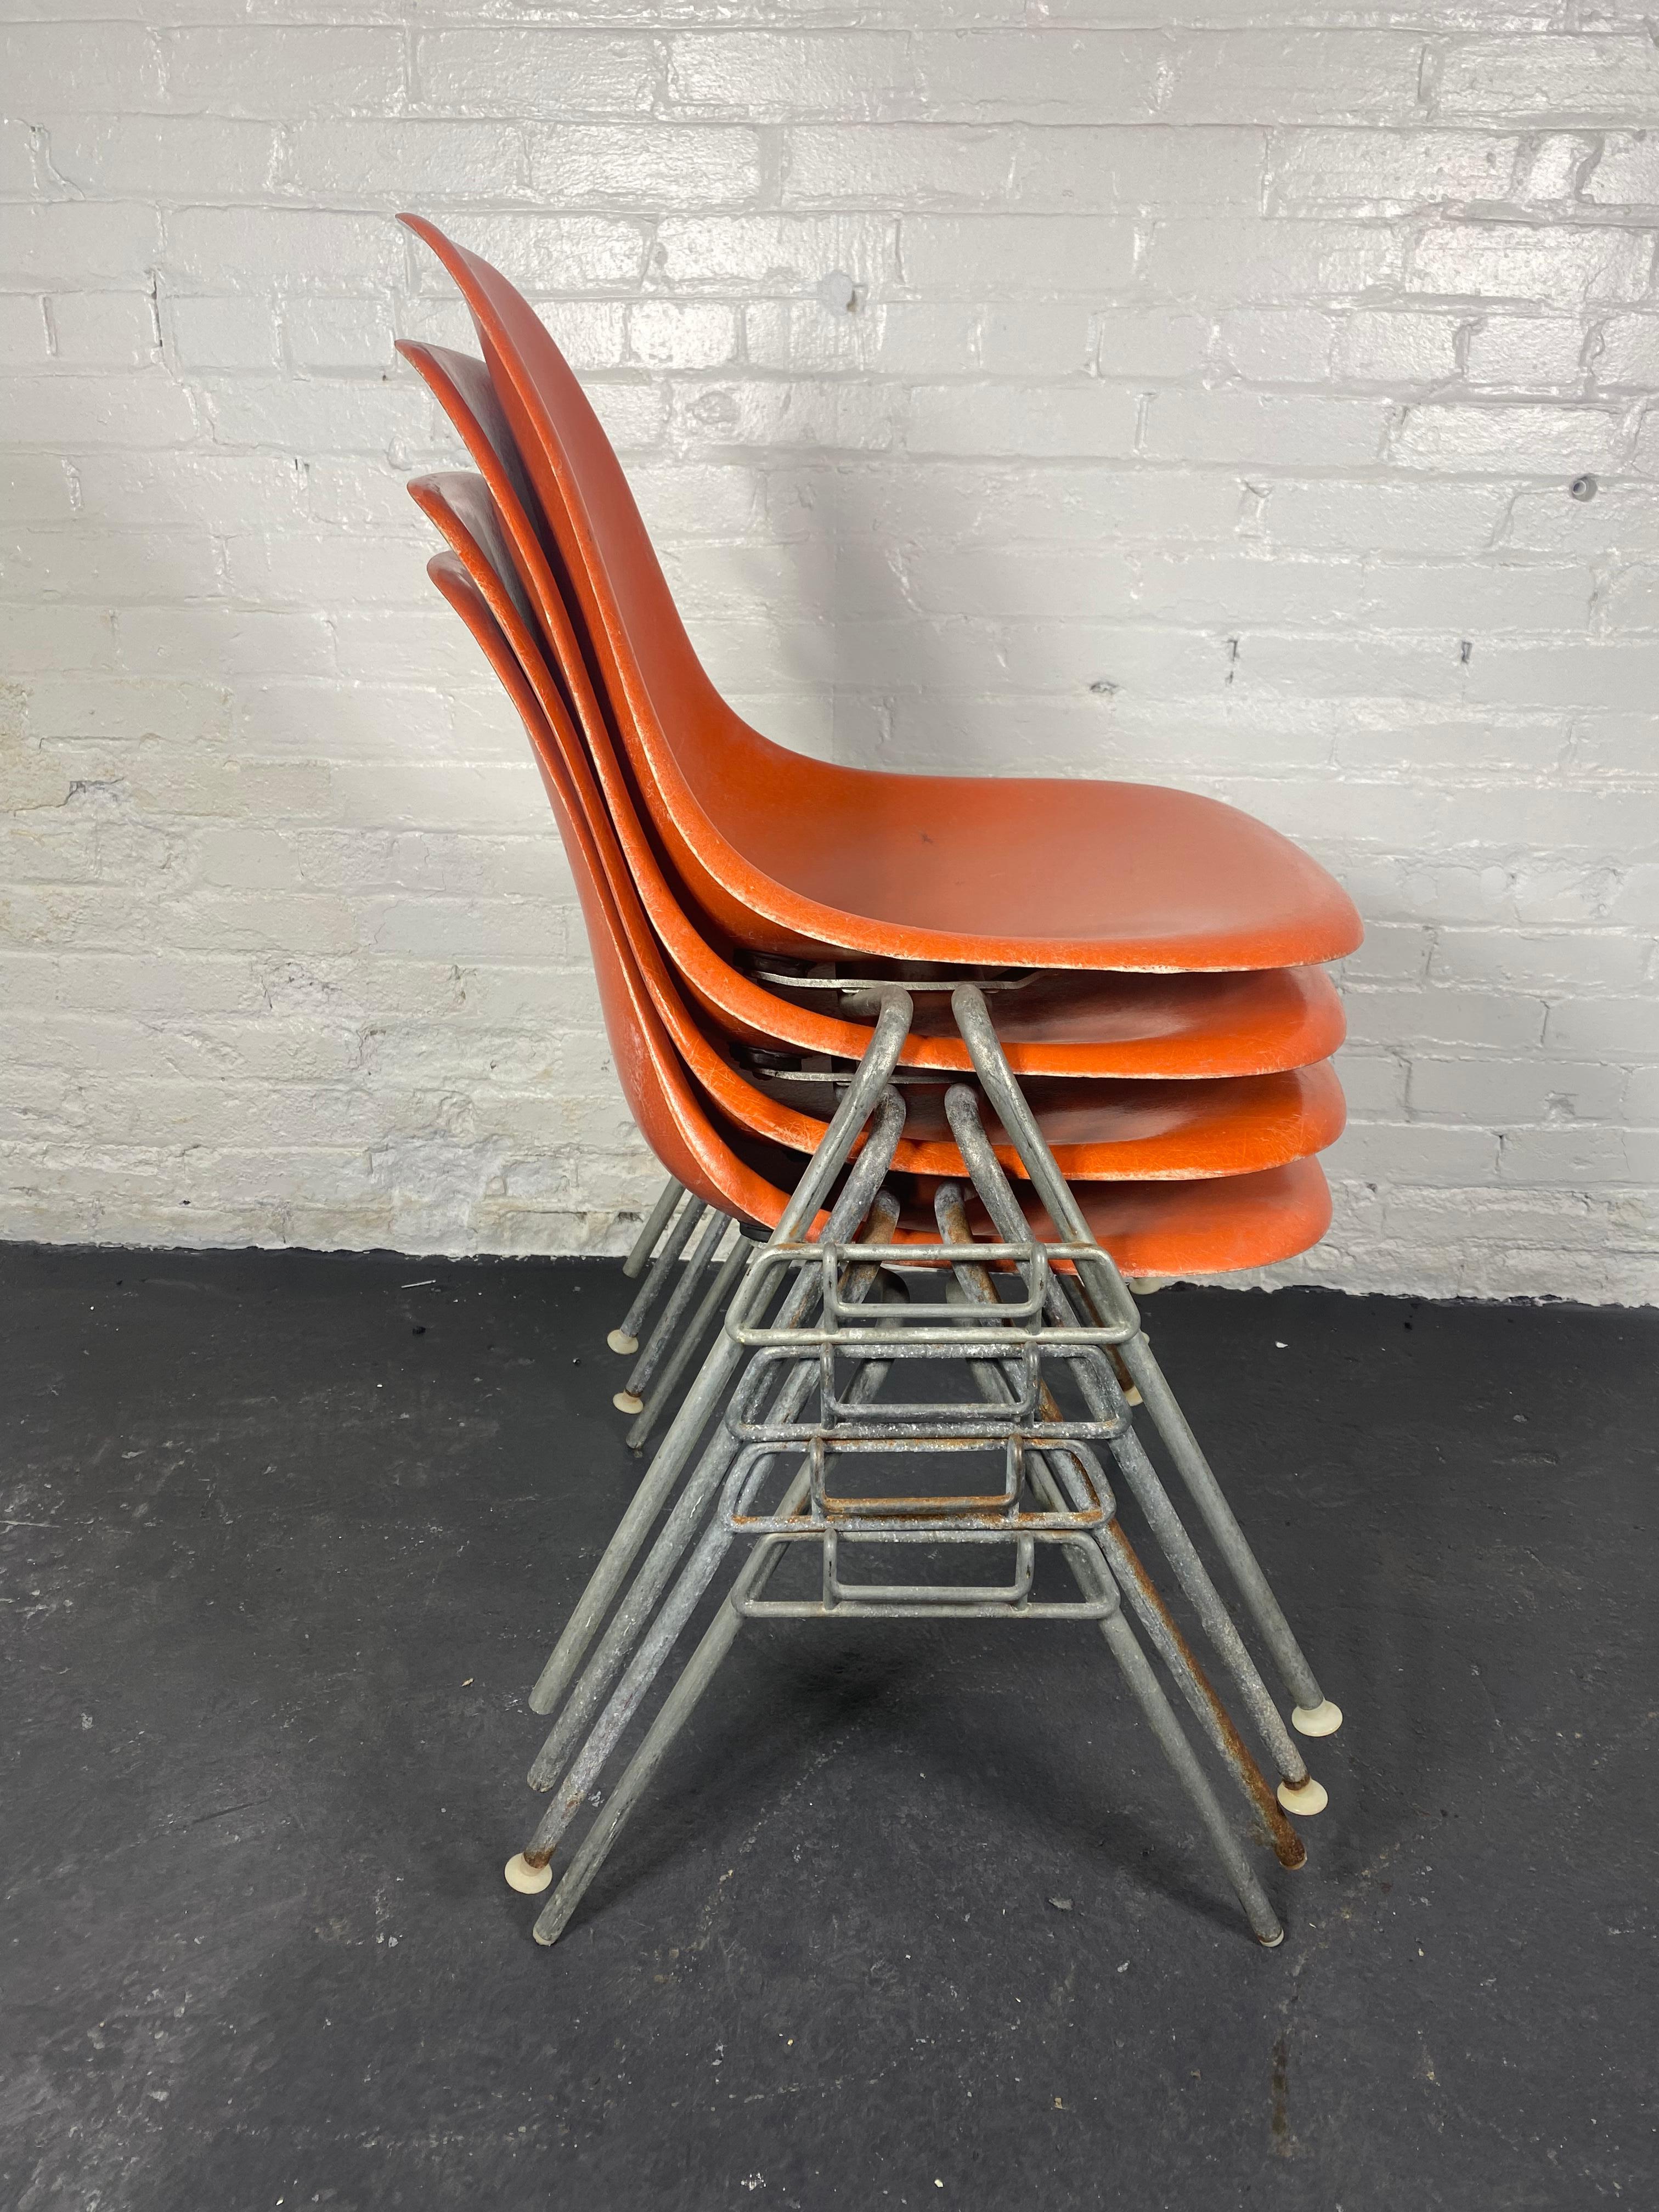 Superbe ensemble de 4 chaises de salle à manger empilables par Charles & Ray Eames pour Herman Miller, cLASSIC mID cENTURY Modern design... , circa 1970 (fin des années 1960) 
Le dessous des chaises porte la mention 